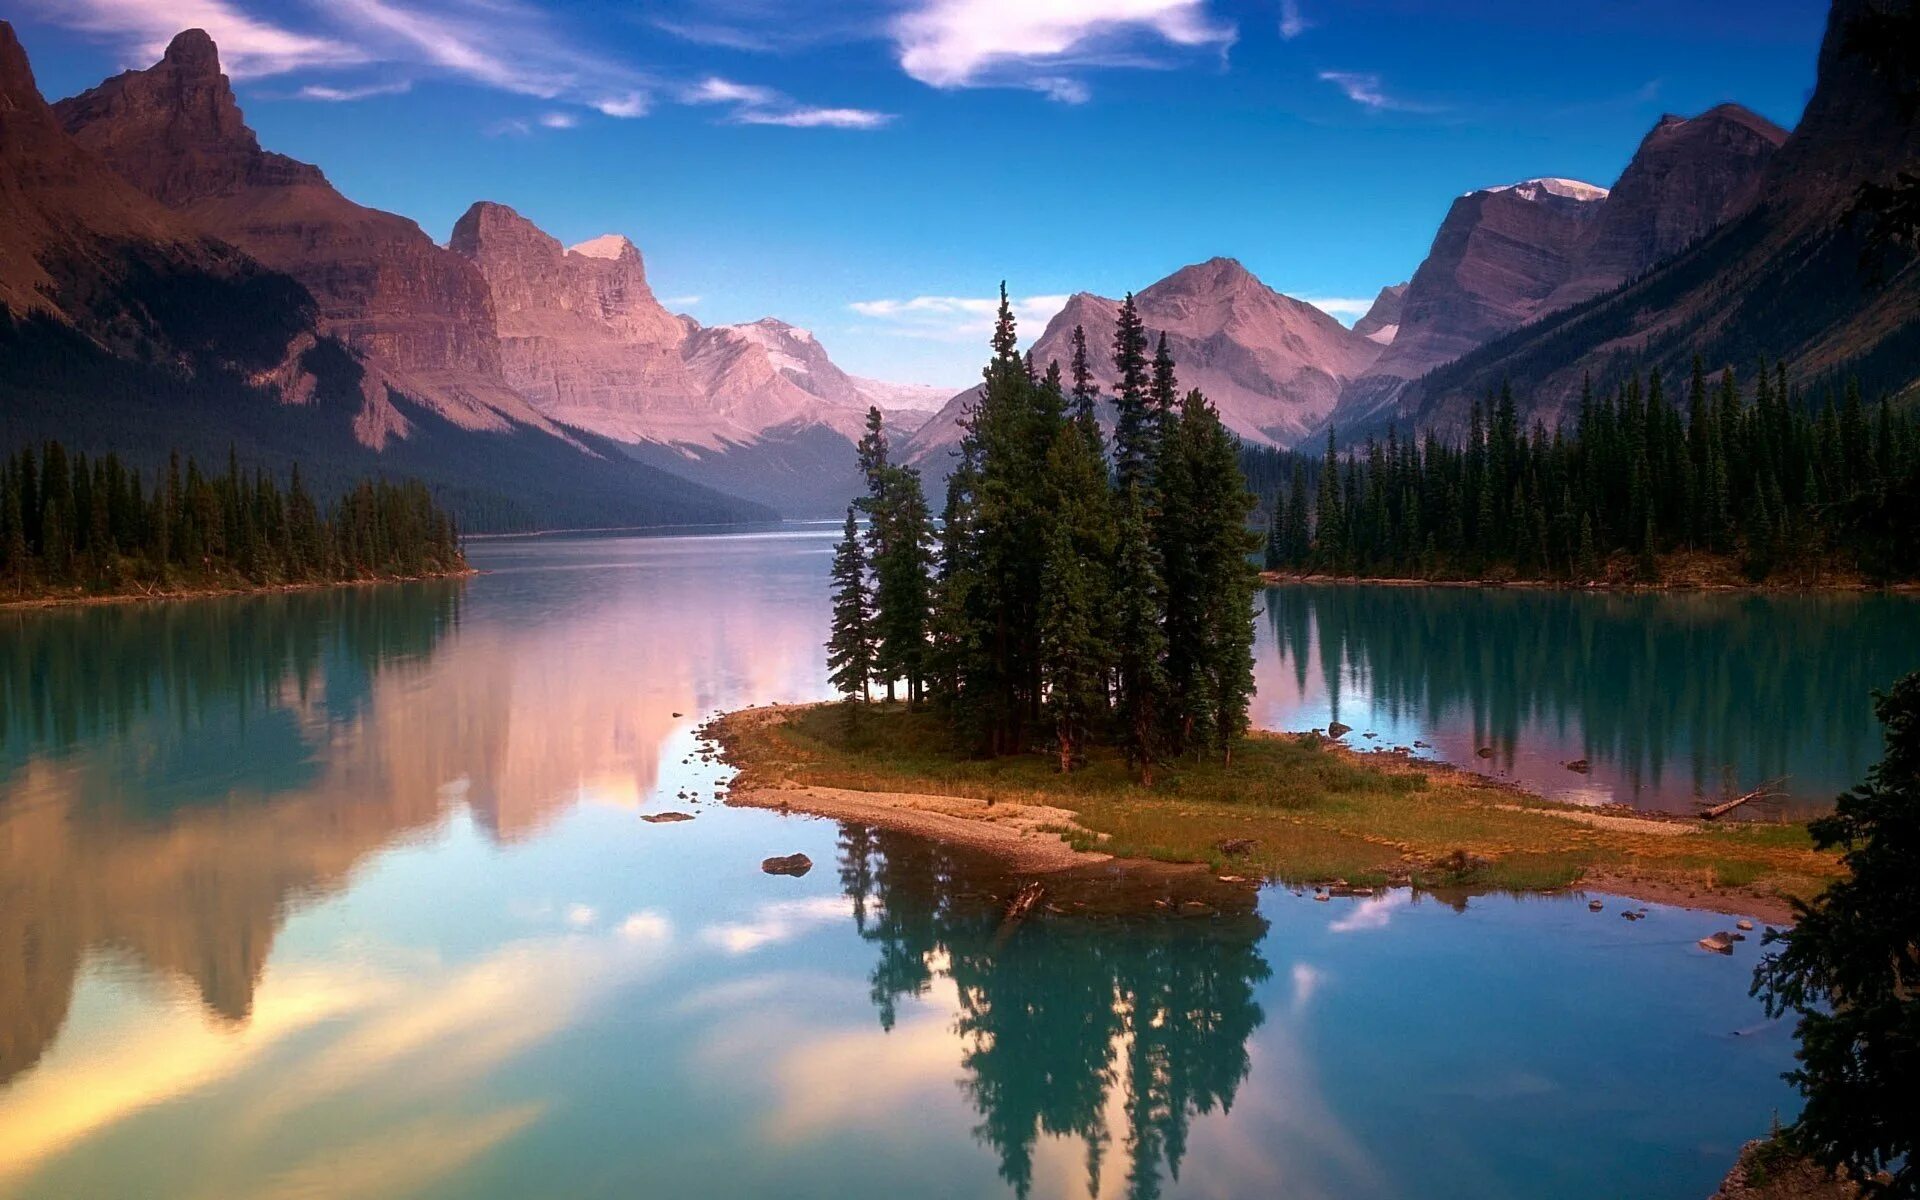 Картинки на экран красивые большие. Национальный парк Джаспер, Альберта, Канада. Озеро Макдональд штат Монтана 4k. Озеро Малайн в национальном парке Джаспер Альберта Канада. Пейзаж.